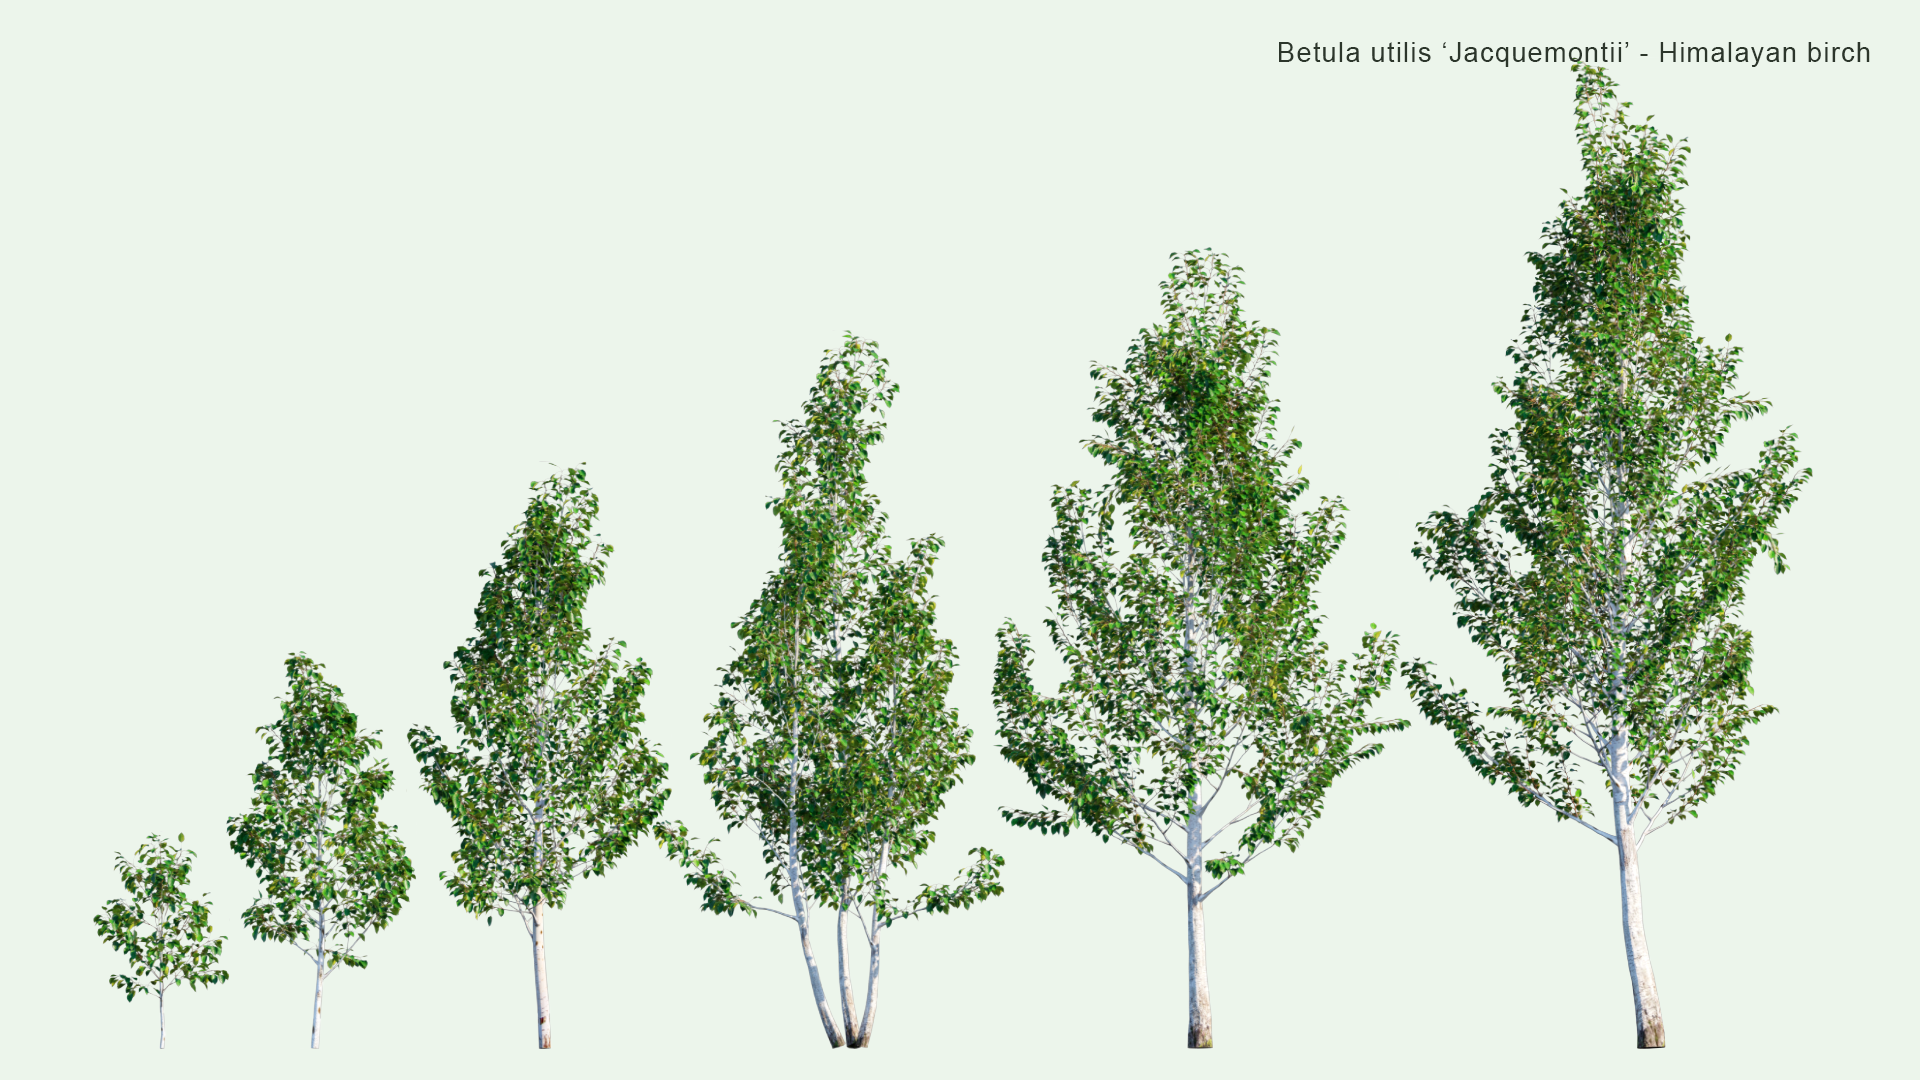 2D Betula Utilis 'Jacquemontii' - Himalayan Birch